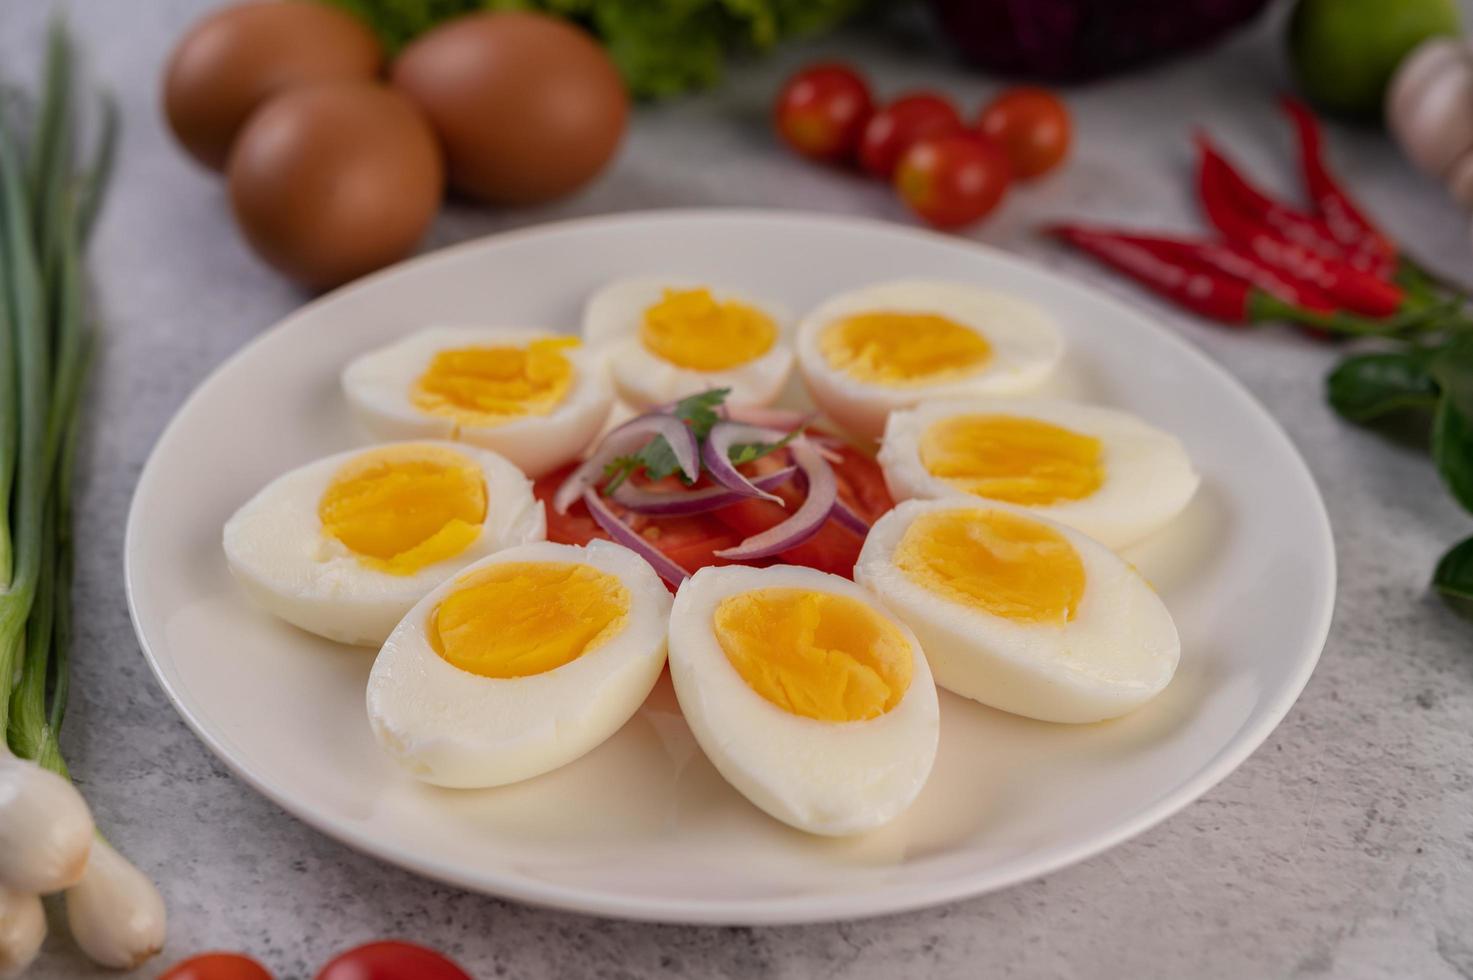 ovos meio cozidos com tomate e cebolinha foto